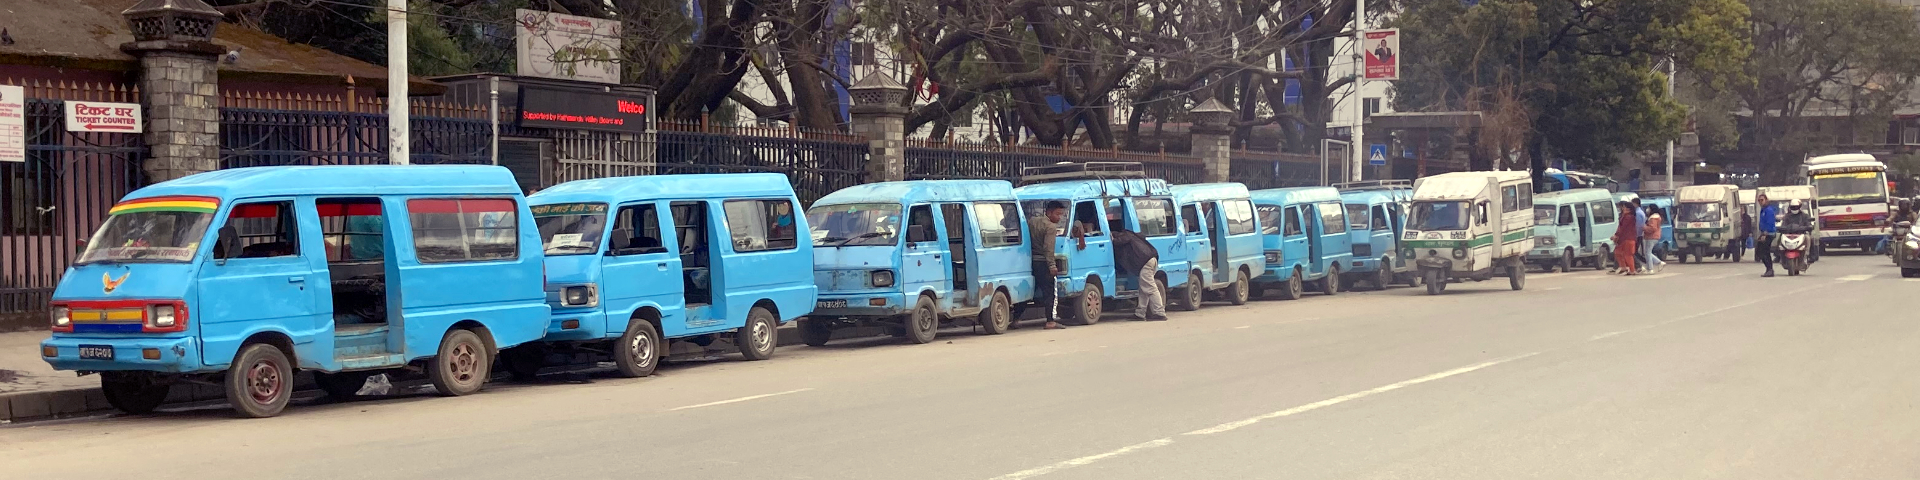 Blaue Kleinbusse stehen in einer Reihe an einer Straße.